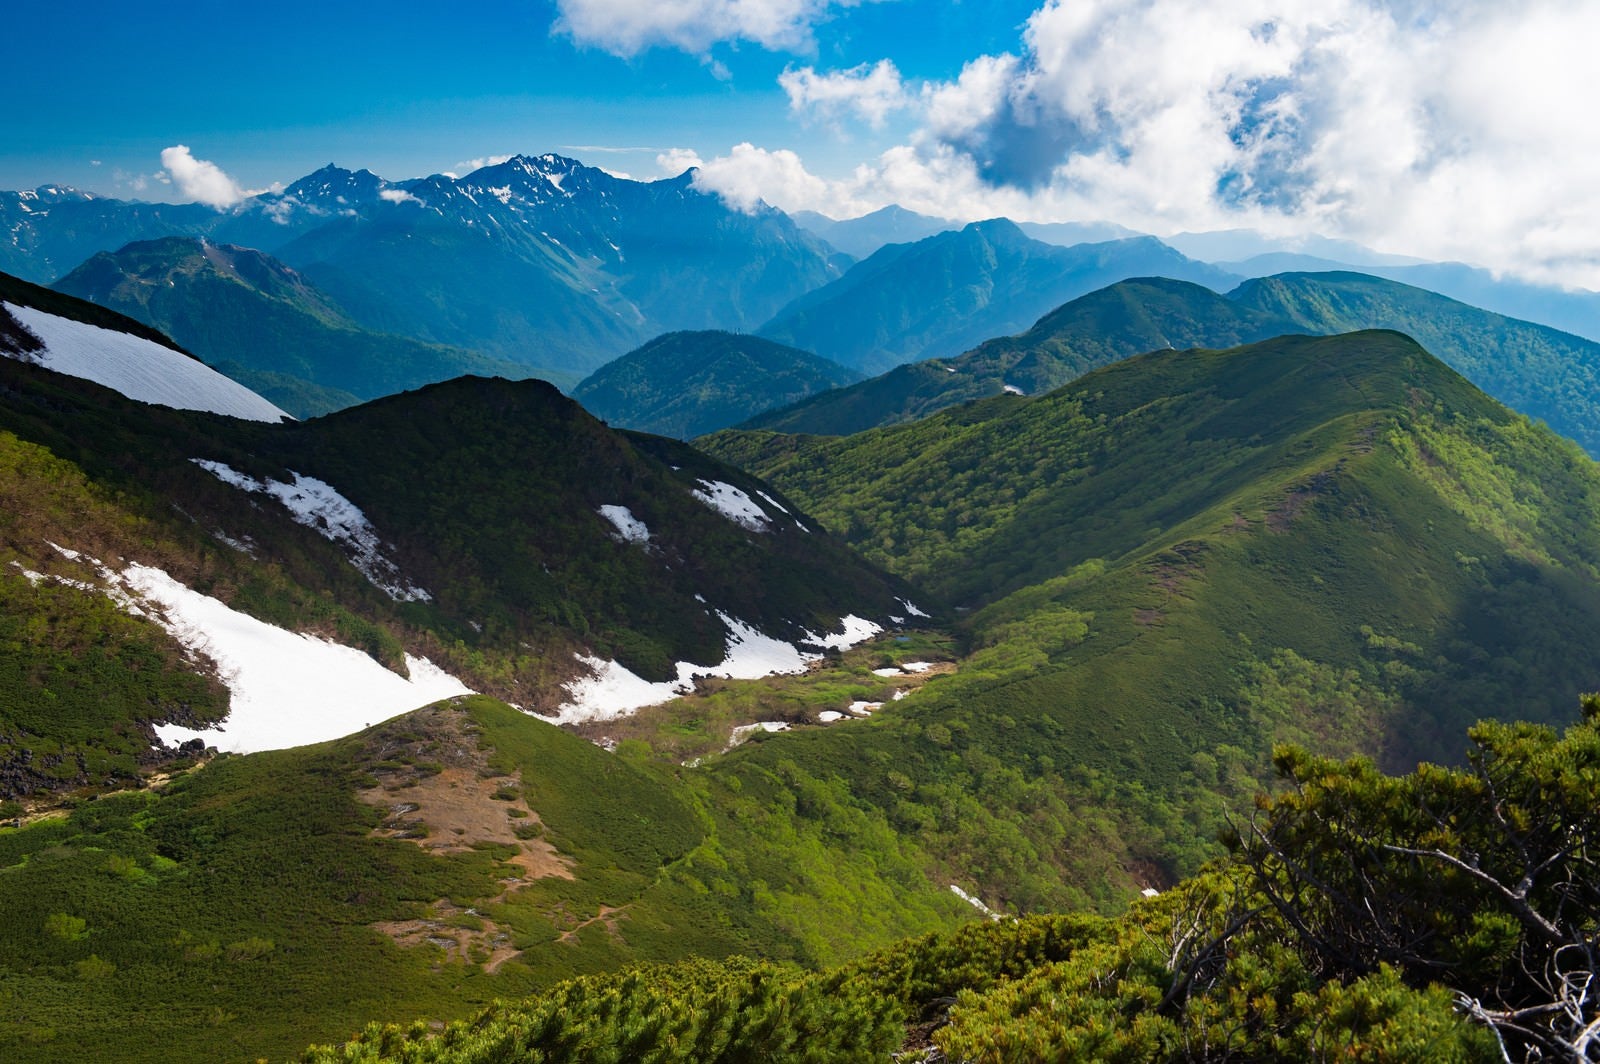 「雪が残る山間、乗鞍新登山道から見える景観」の写真